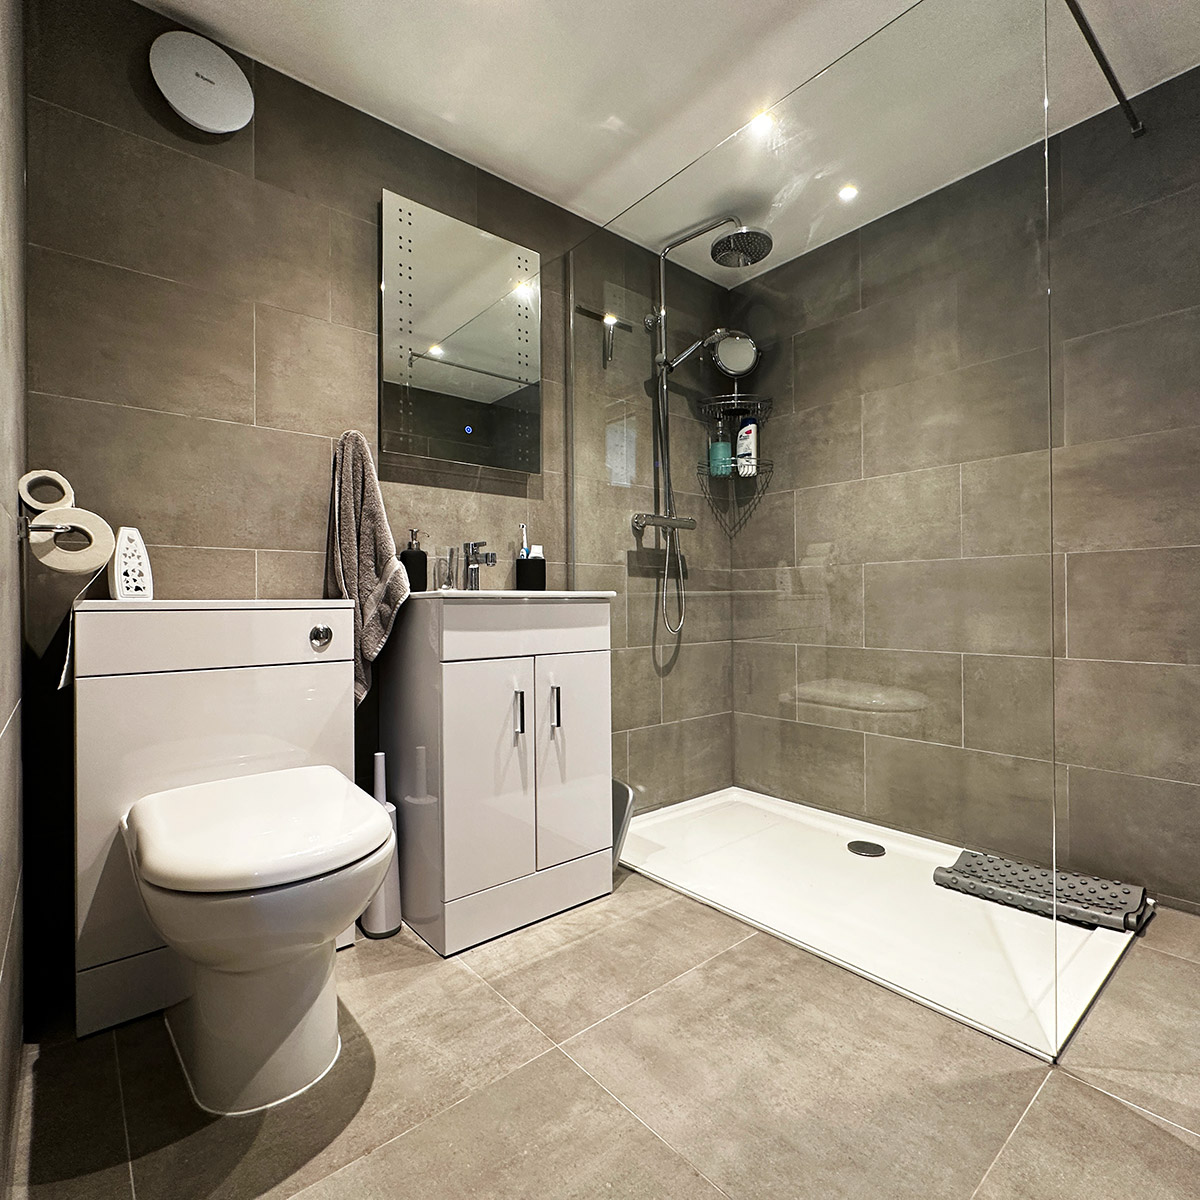 Designer bathroom for bespoke mobile home